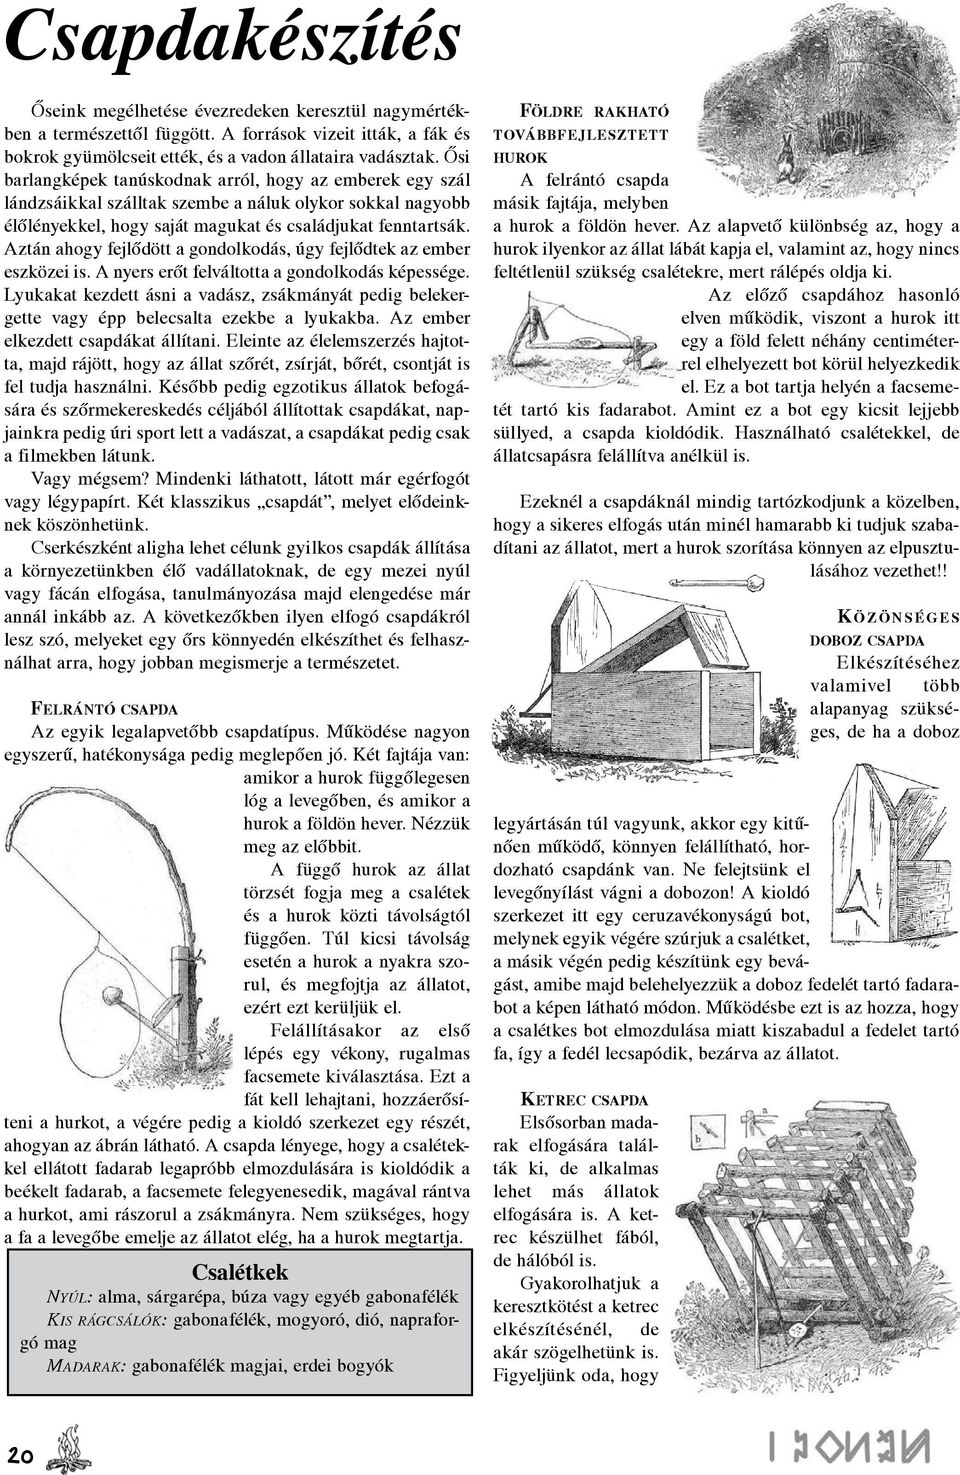 A magyar cserkészet lapja július augusztus Szent Jakab hava Kisasszony hava  0,75. SZMCS vezetőképző táborok - PDF Free Download